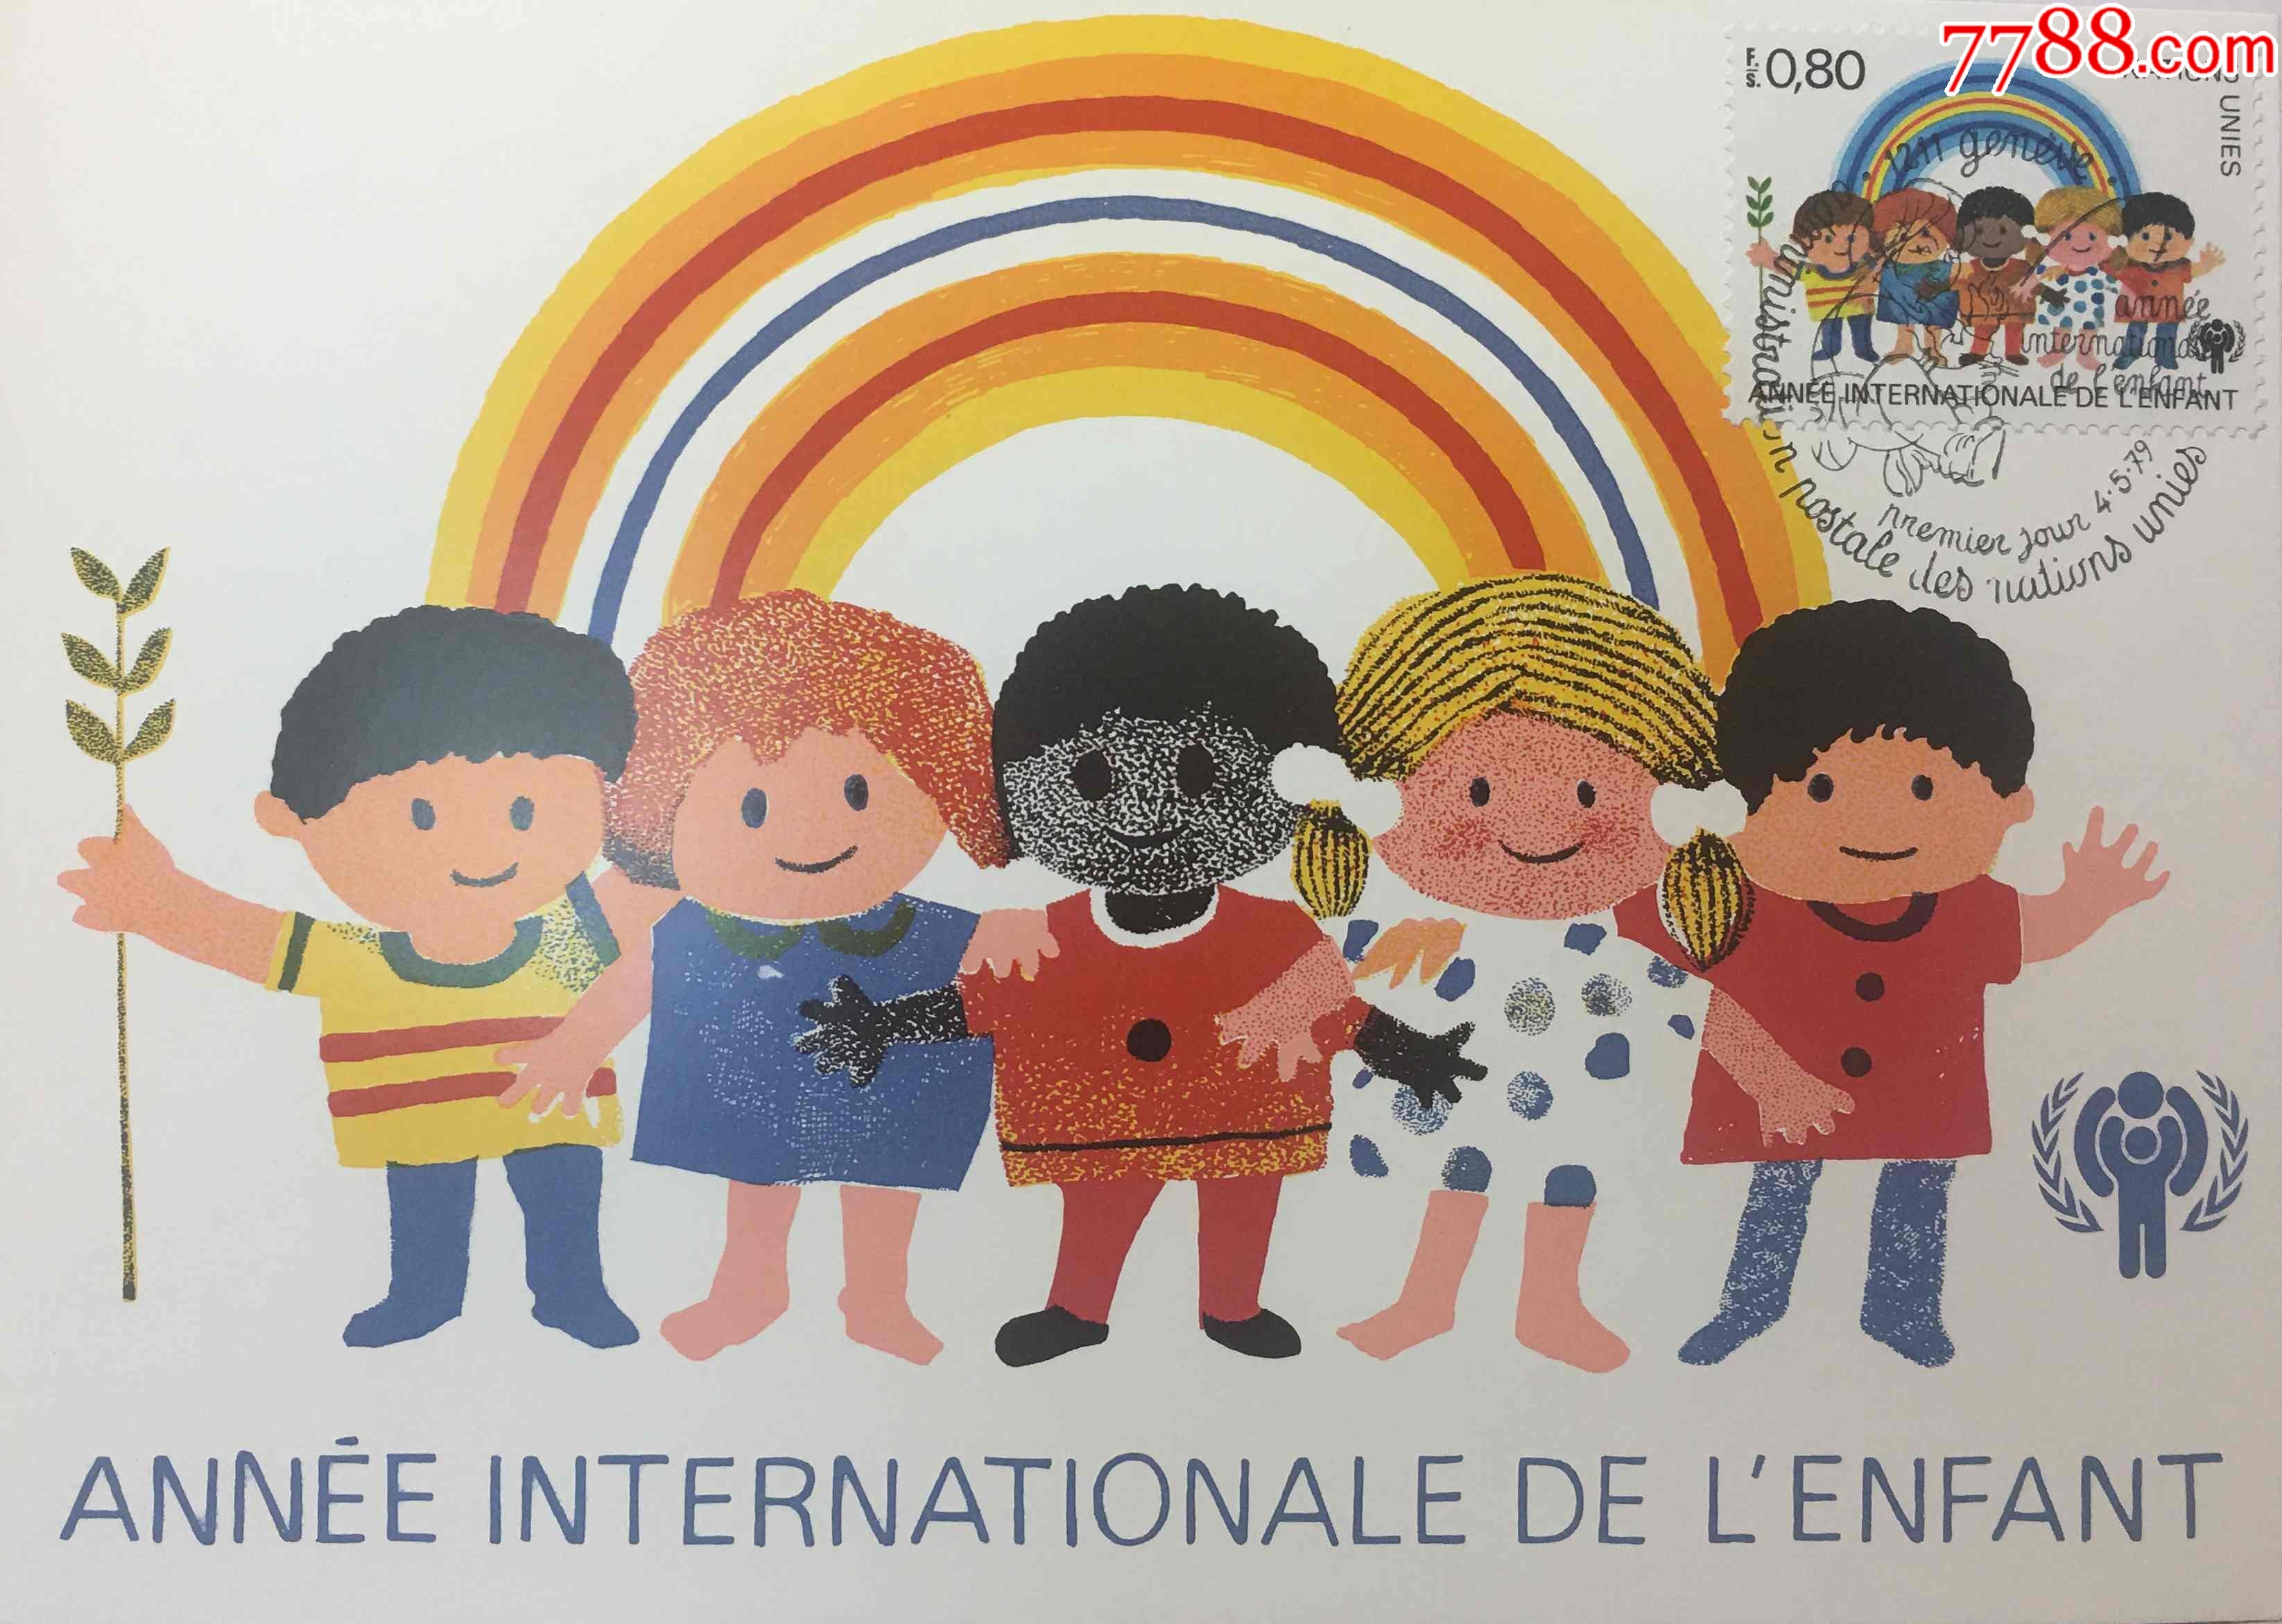 1979年联合国日内瓦国际儿童年五大洲儿童联欢画纪念邮票极限片